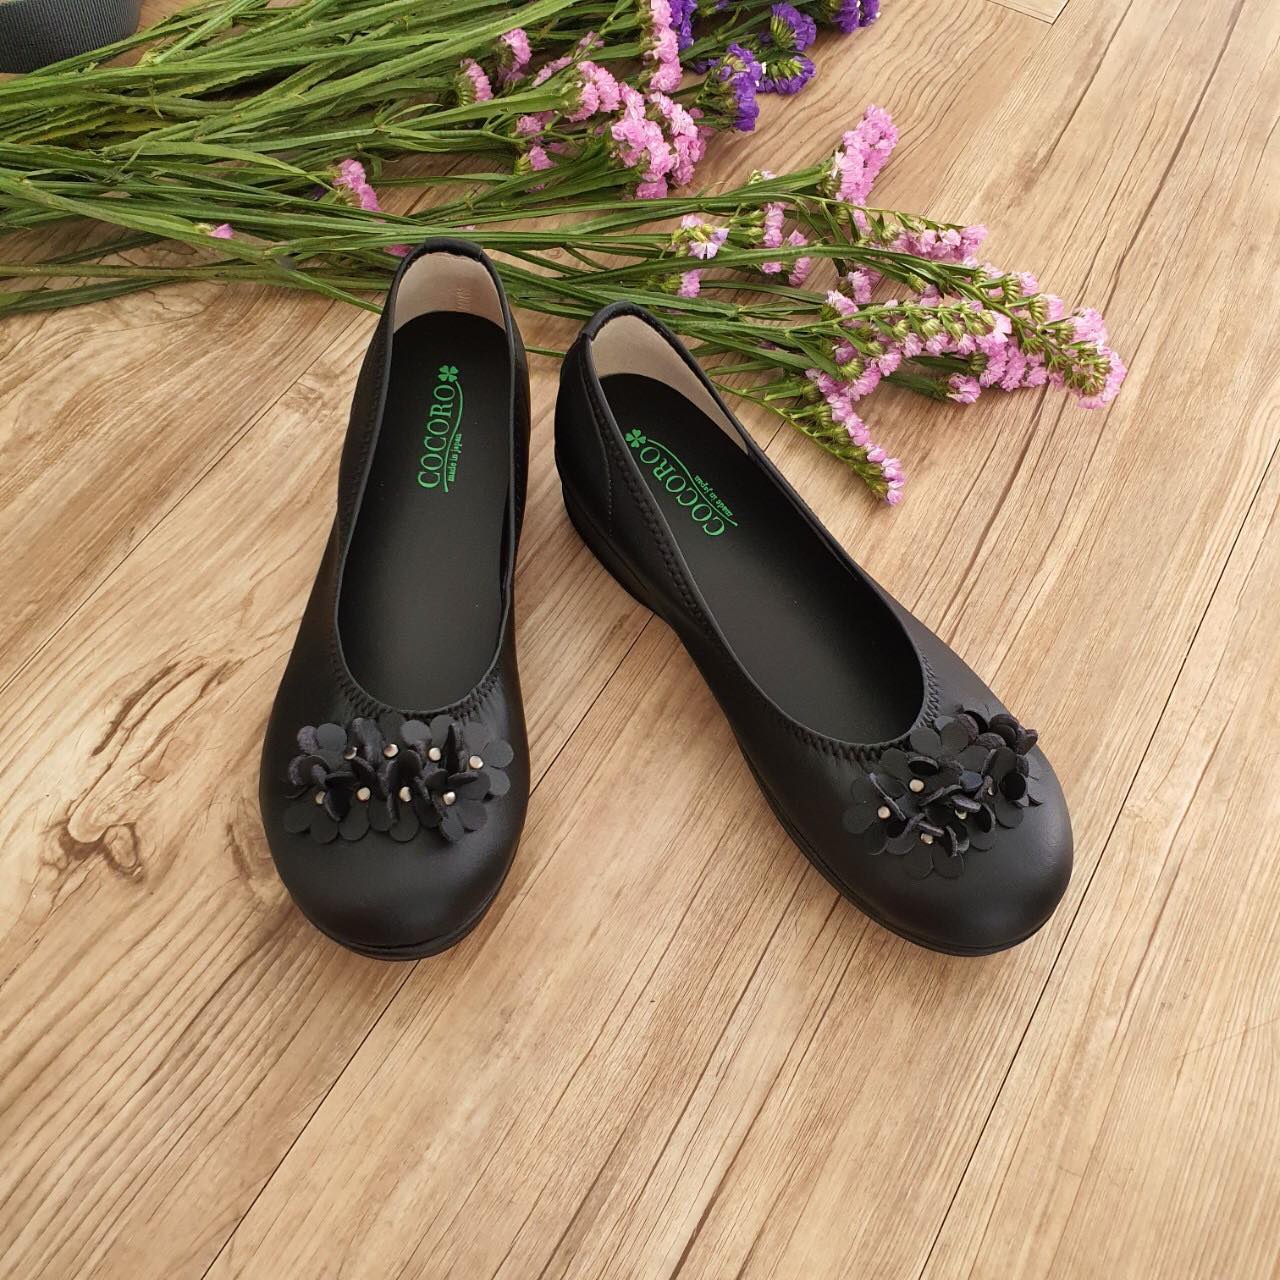 Cocoro Mochi Floral Black รองเท้าสุขภาพ รองเท้าผู้หญิง น้ำหนักเบาพื้นโมจิ รองรับแรงกระแทกจากการเดินได้ดี